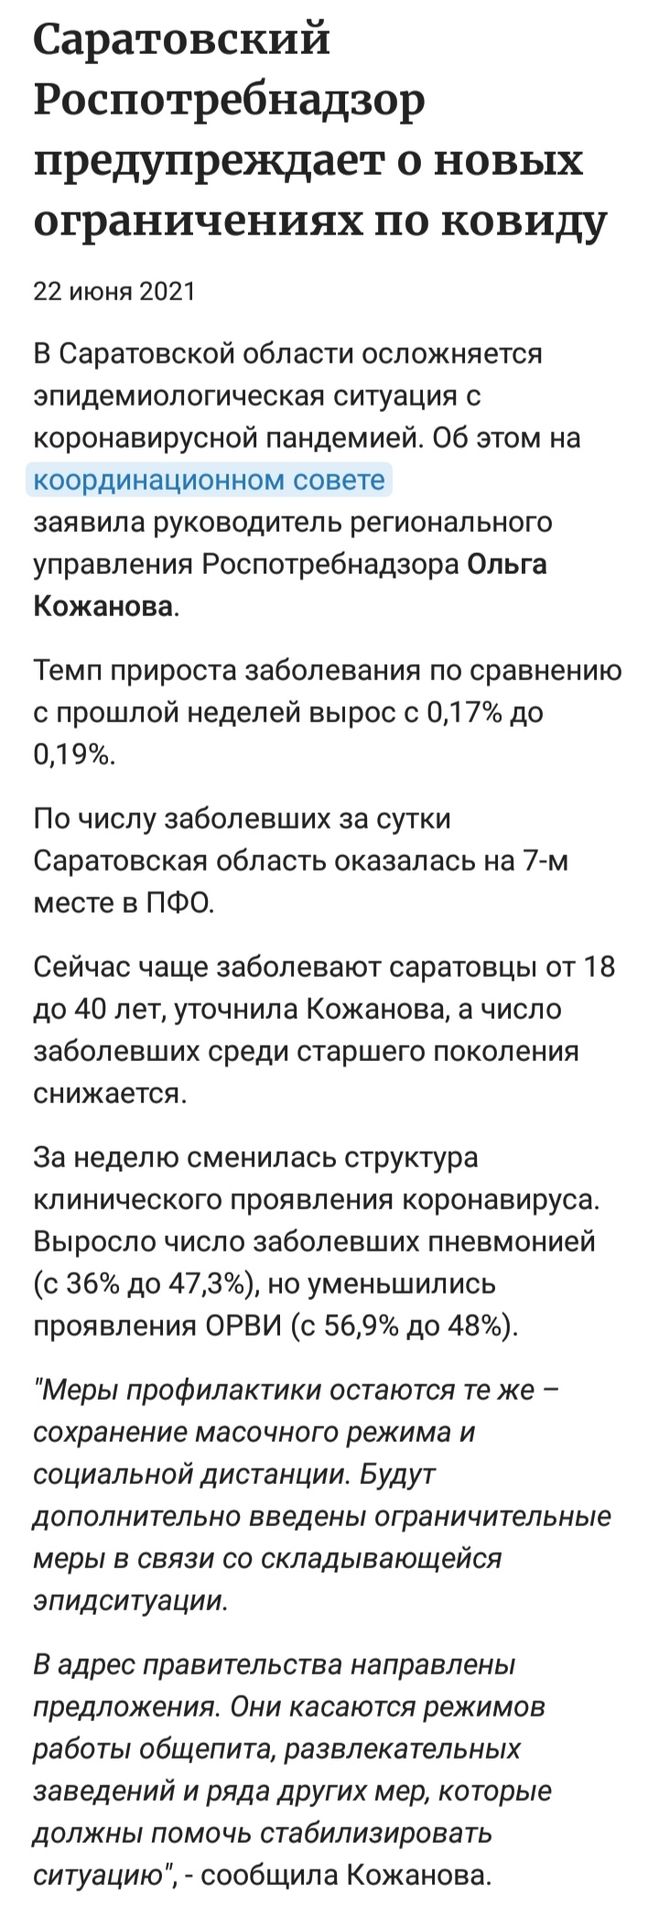 Скриншот Саратов газета июнь 2021